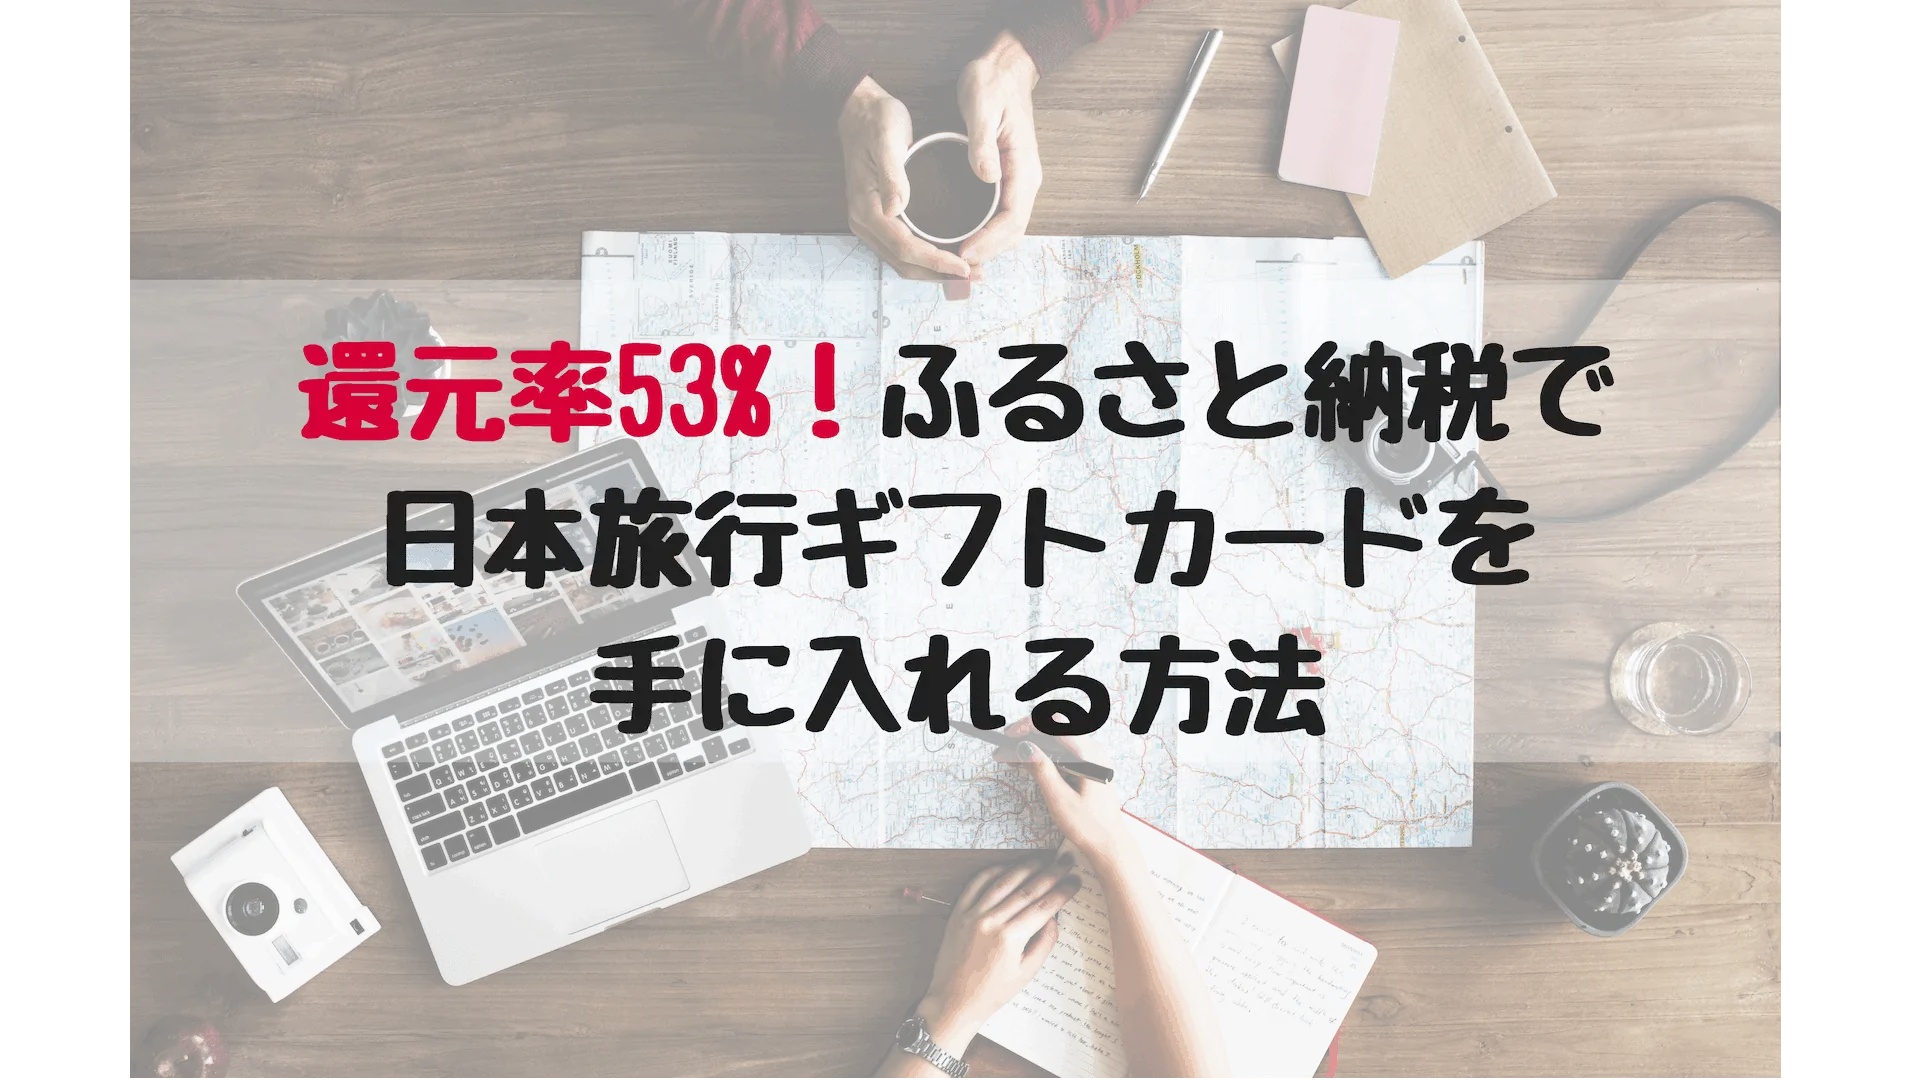 ふるさと納税「ふるなび」で還元率53%の日本旅行ギフトをもらう方法【2019年1月】